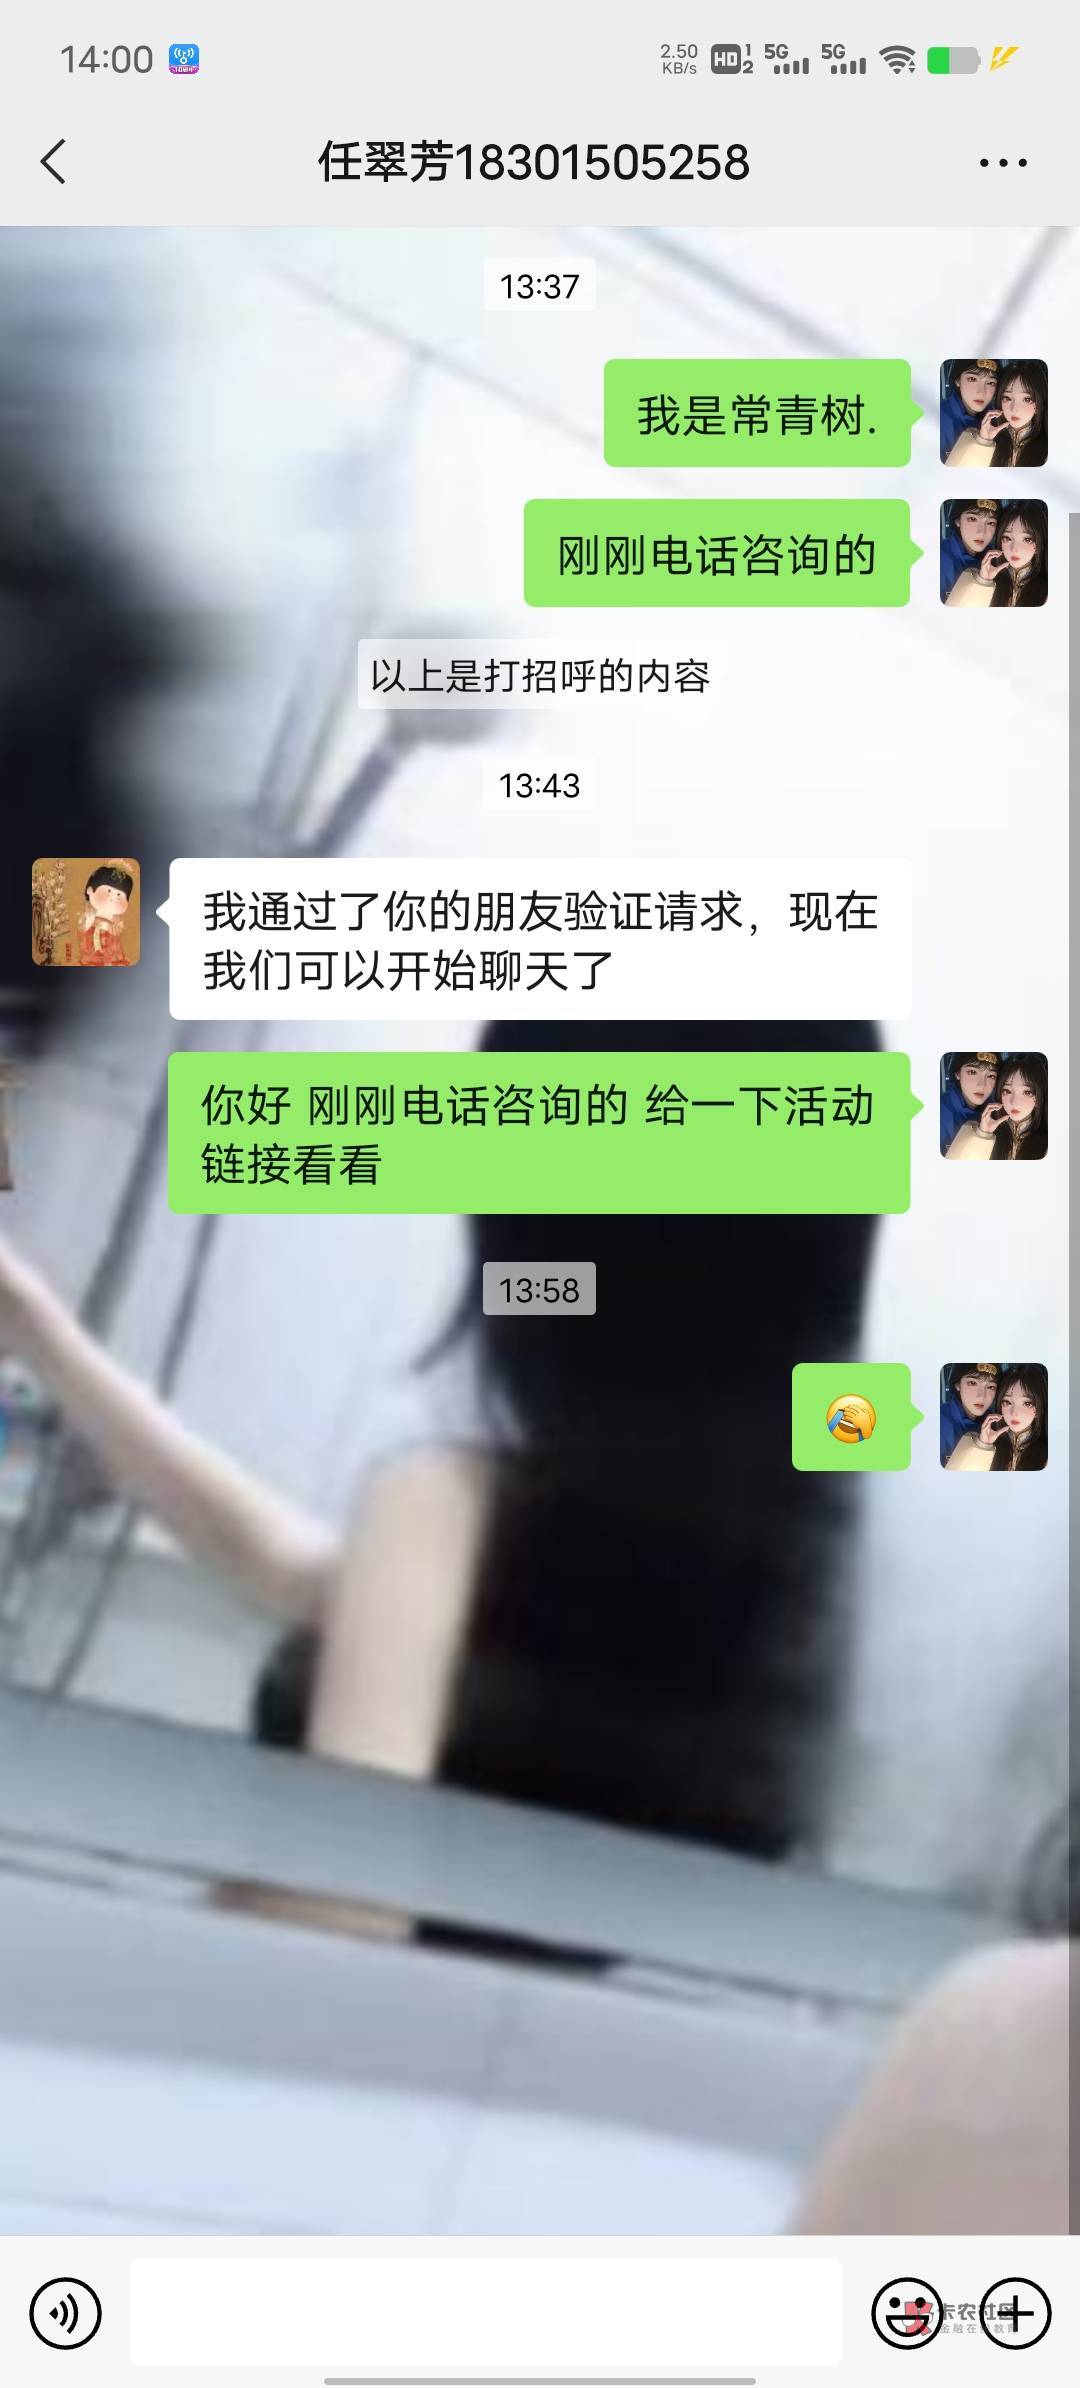 打电话的时候 小芳说加微信给我链接，结果加上了，不回话，中信建投是北京的老哥们去63 / 作者:限量版温柔 / 